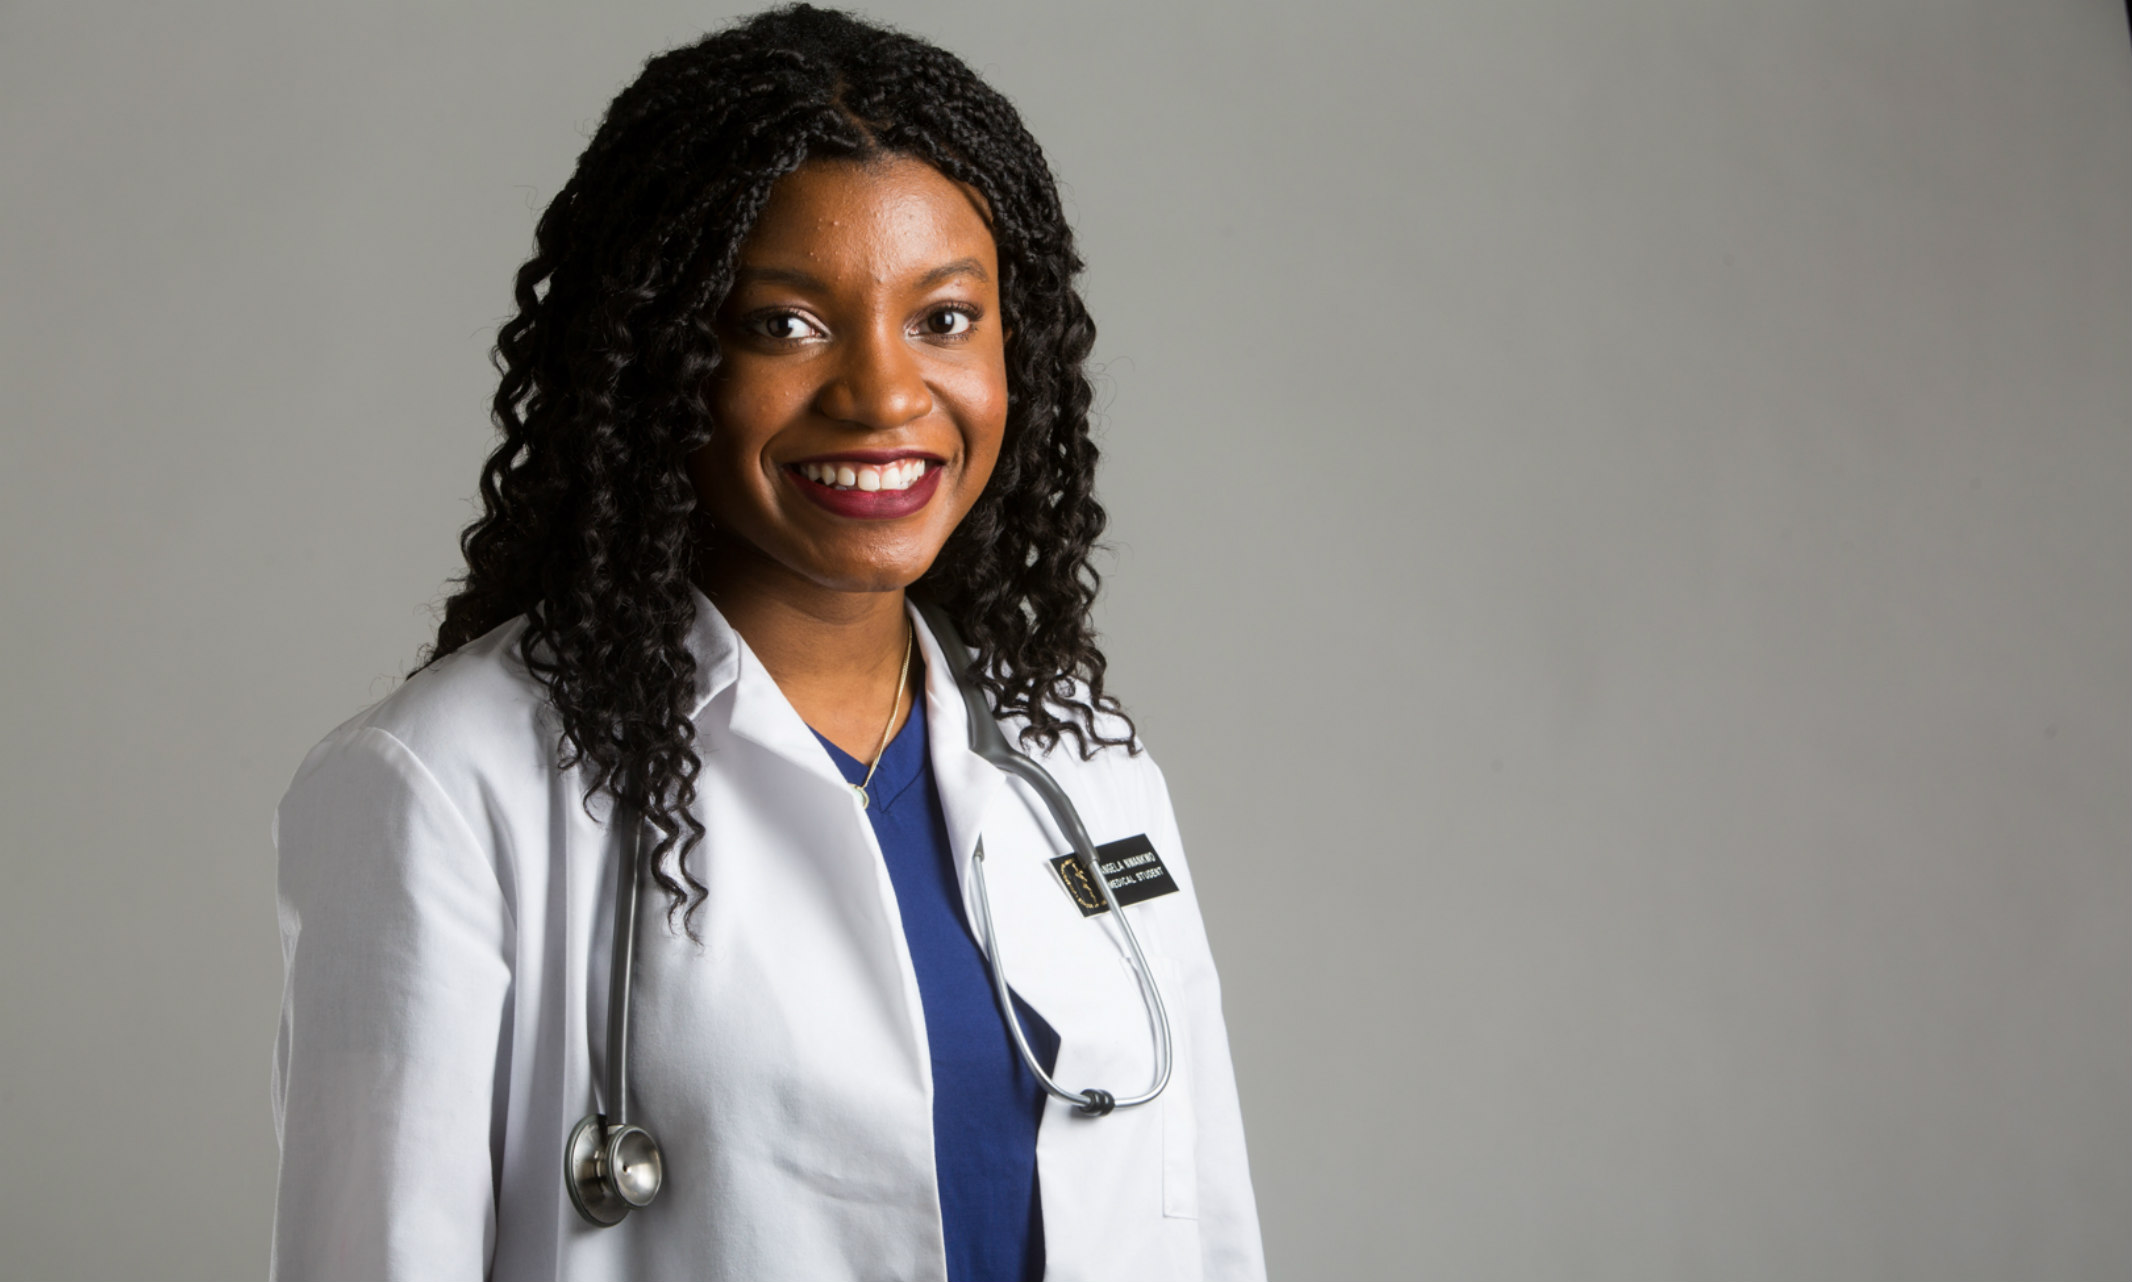 Portrait of medical student Angela Nwankwo wearing a white coat